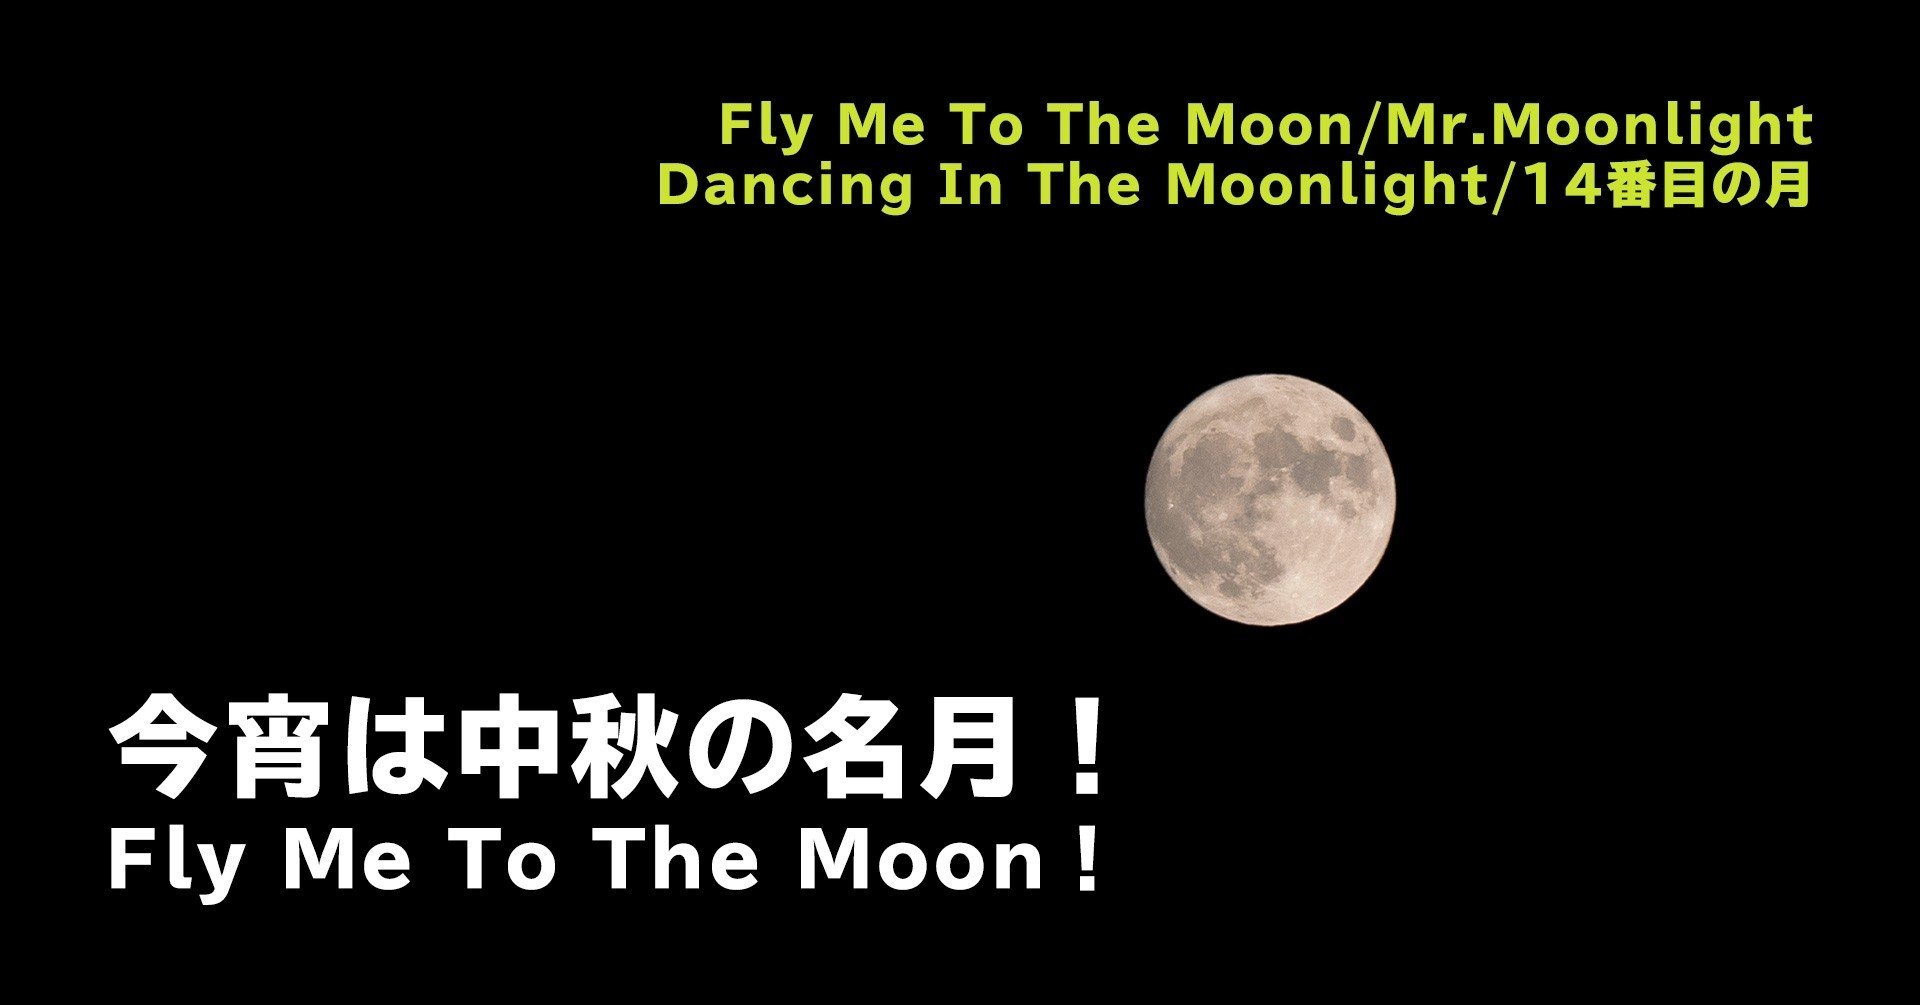 今宵は中秋の名月 Fly Me To The Moon ぐっでぃテレビ 映像クリエイティブlab Note